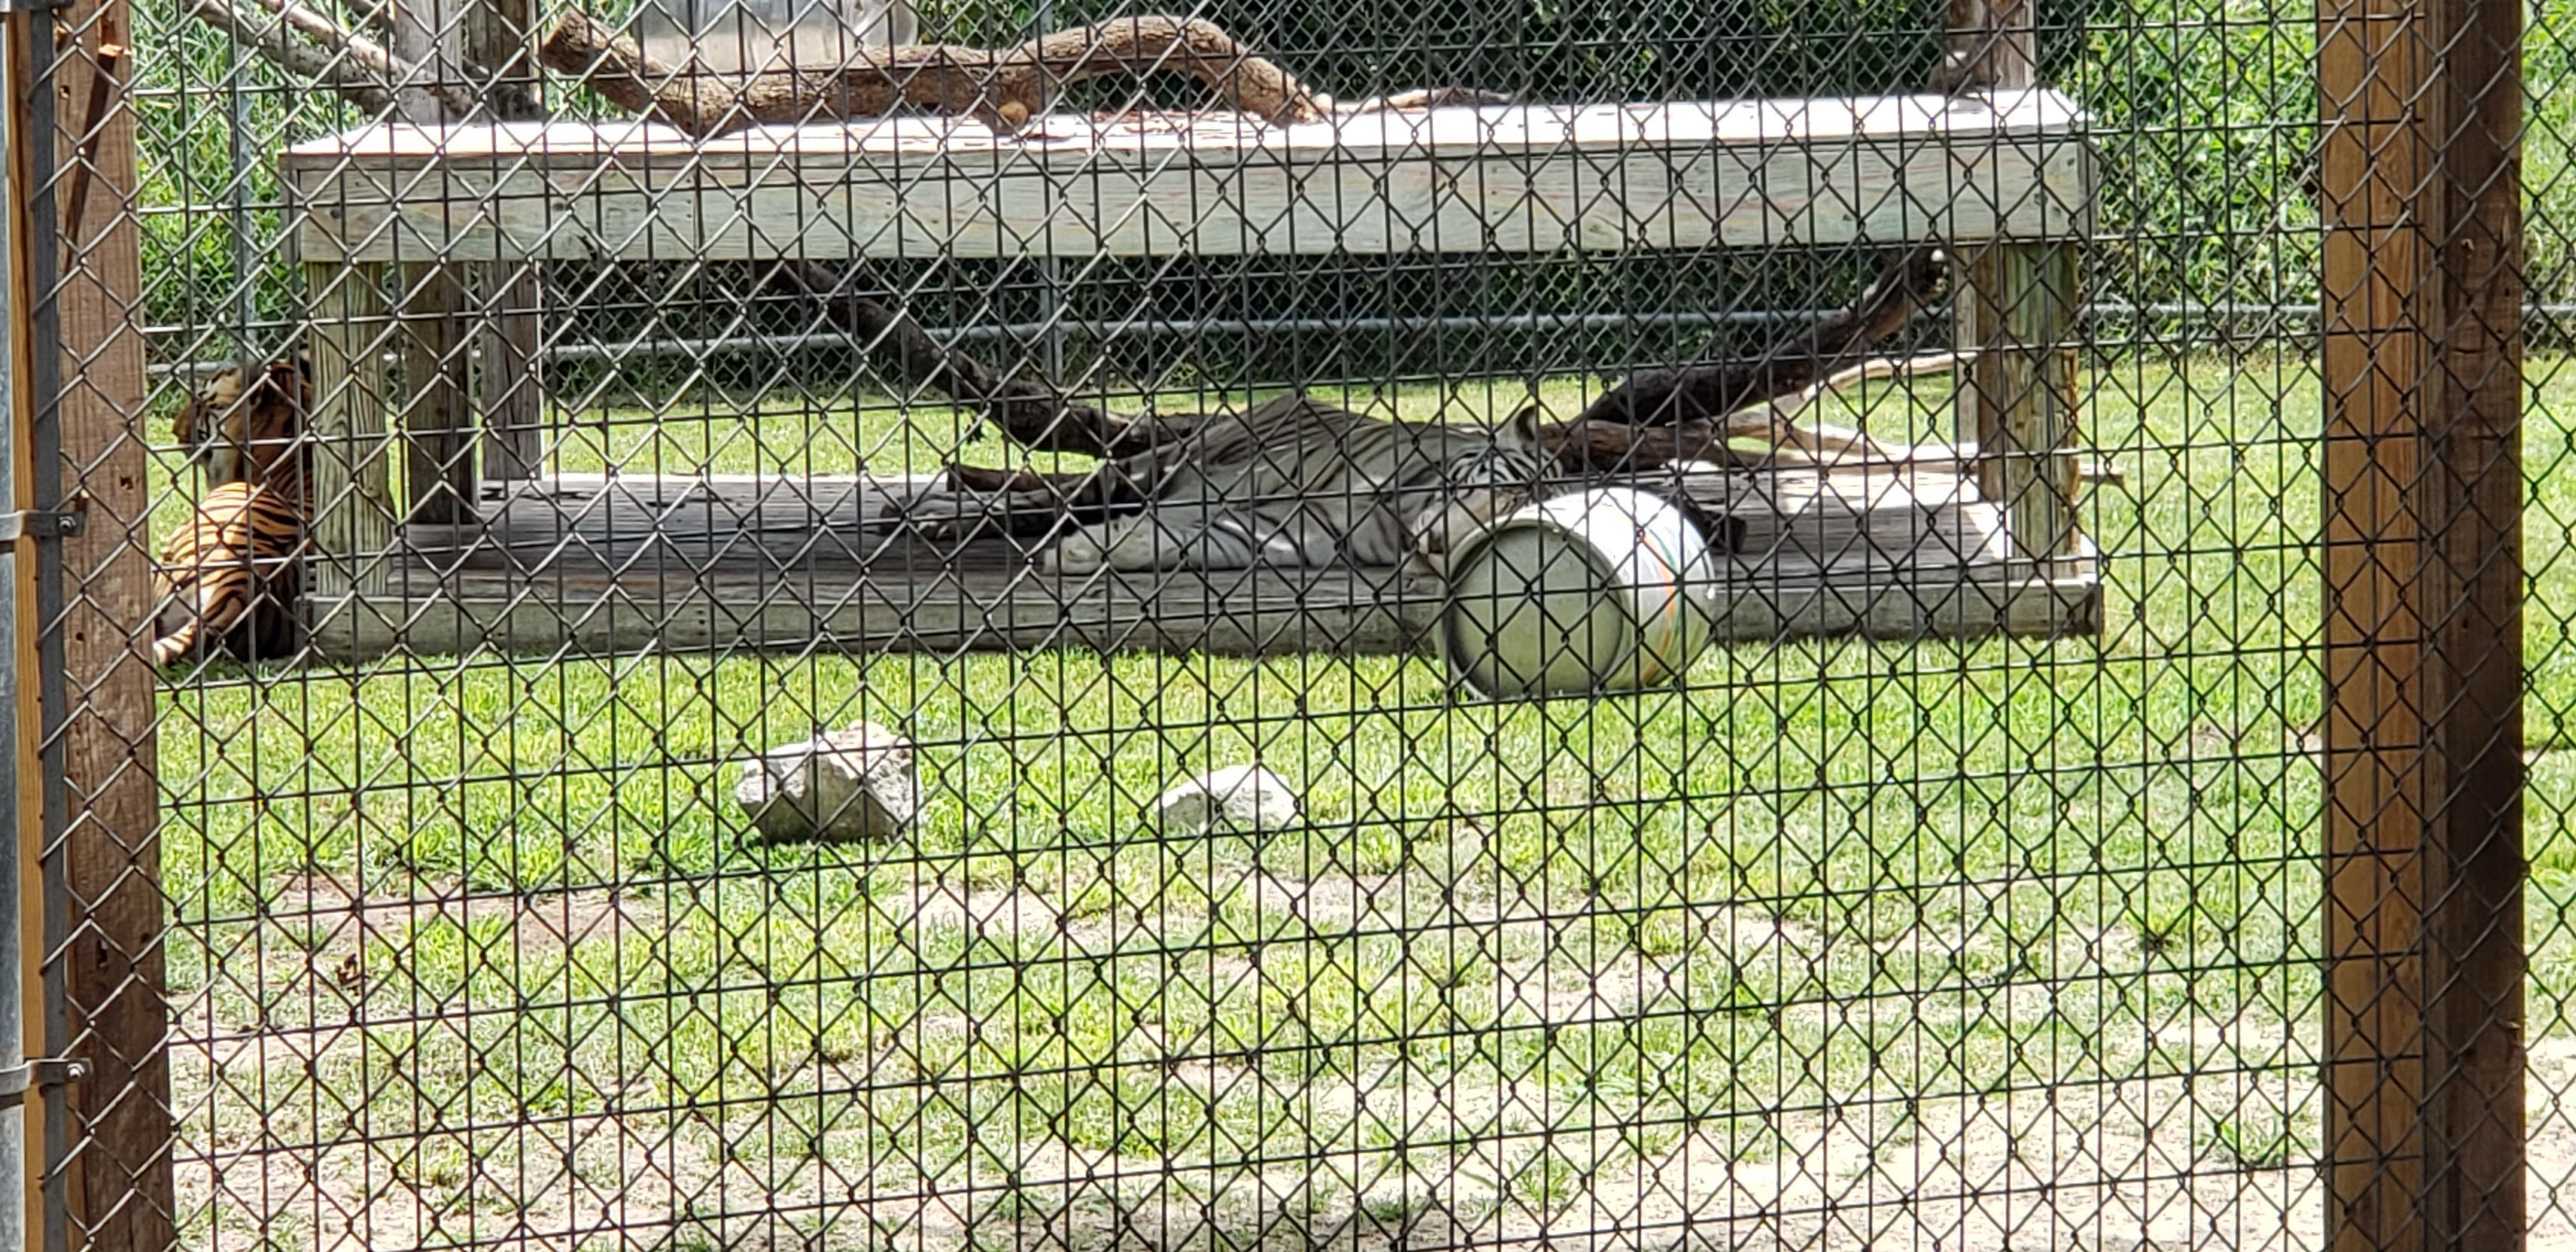 Gulf Shores Zoo Tiger